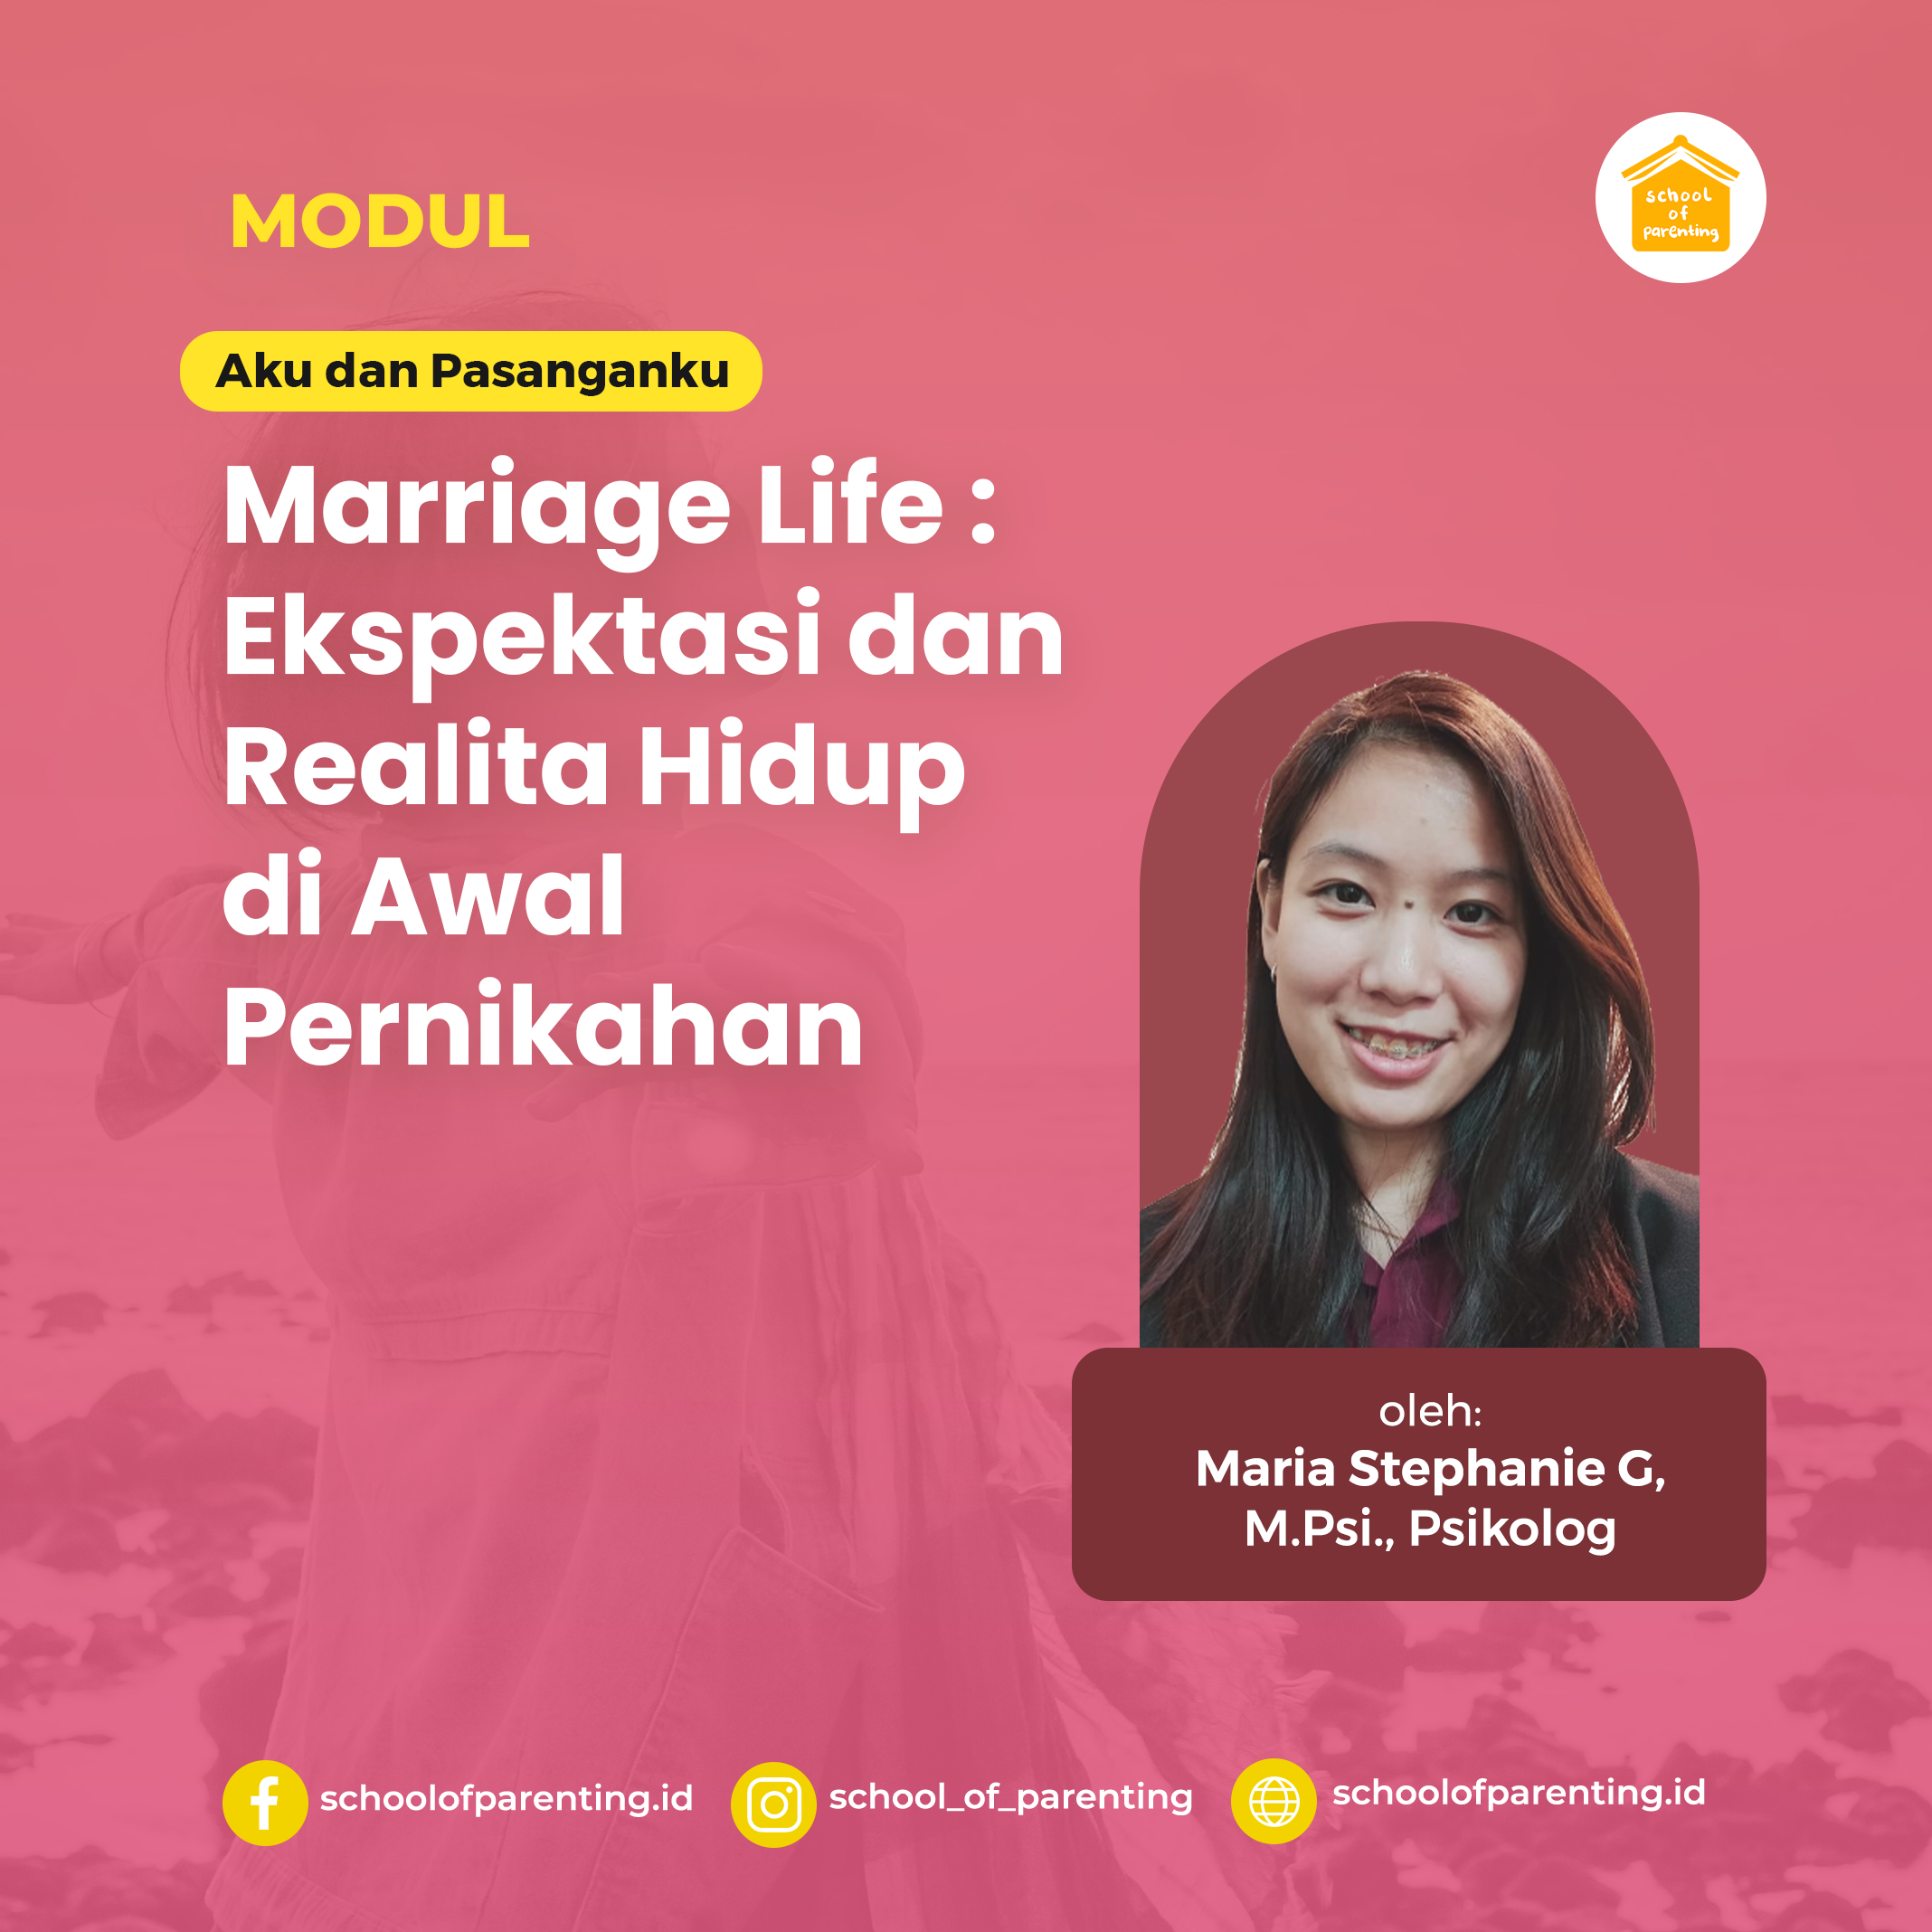 Marriage Life: Ekspektasi dan Realita Hidup di Awal Pernikahan